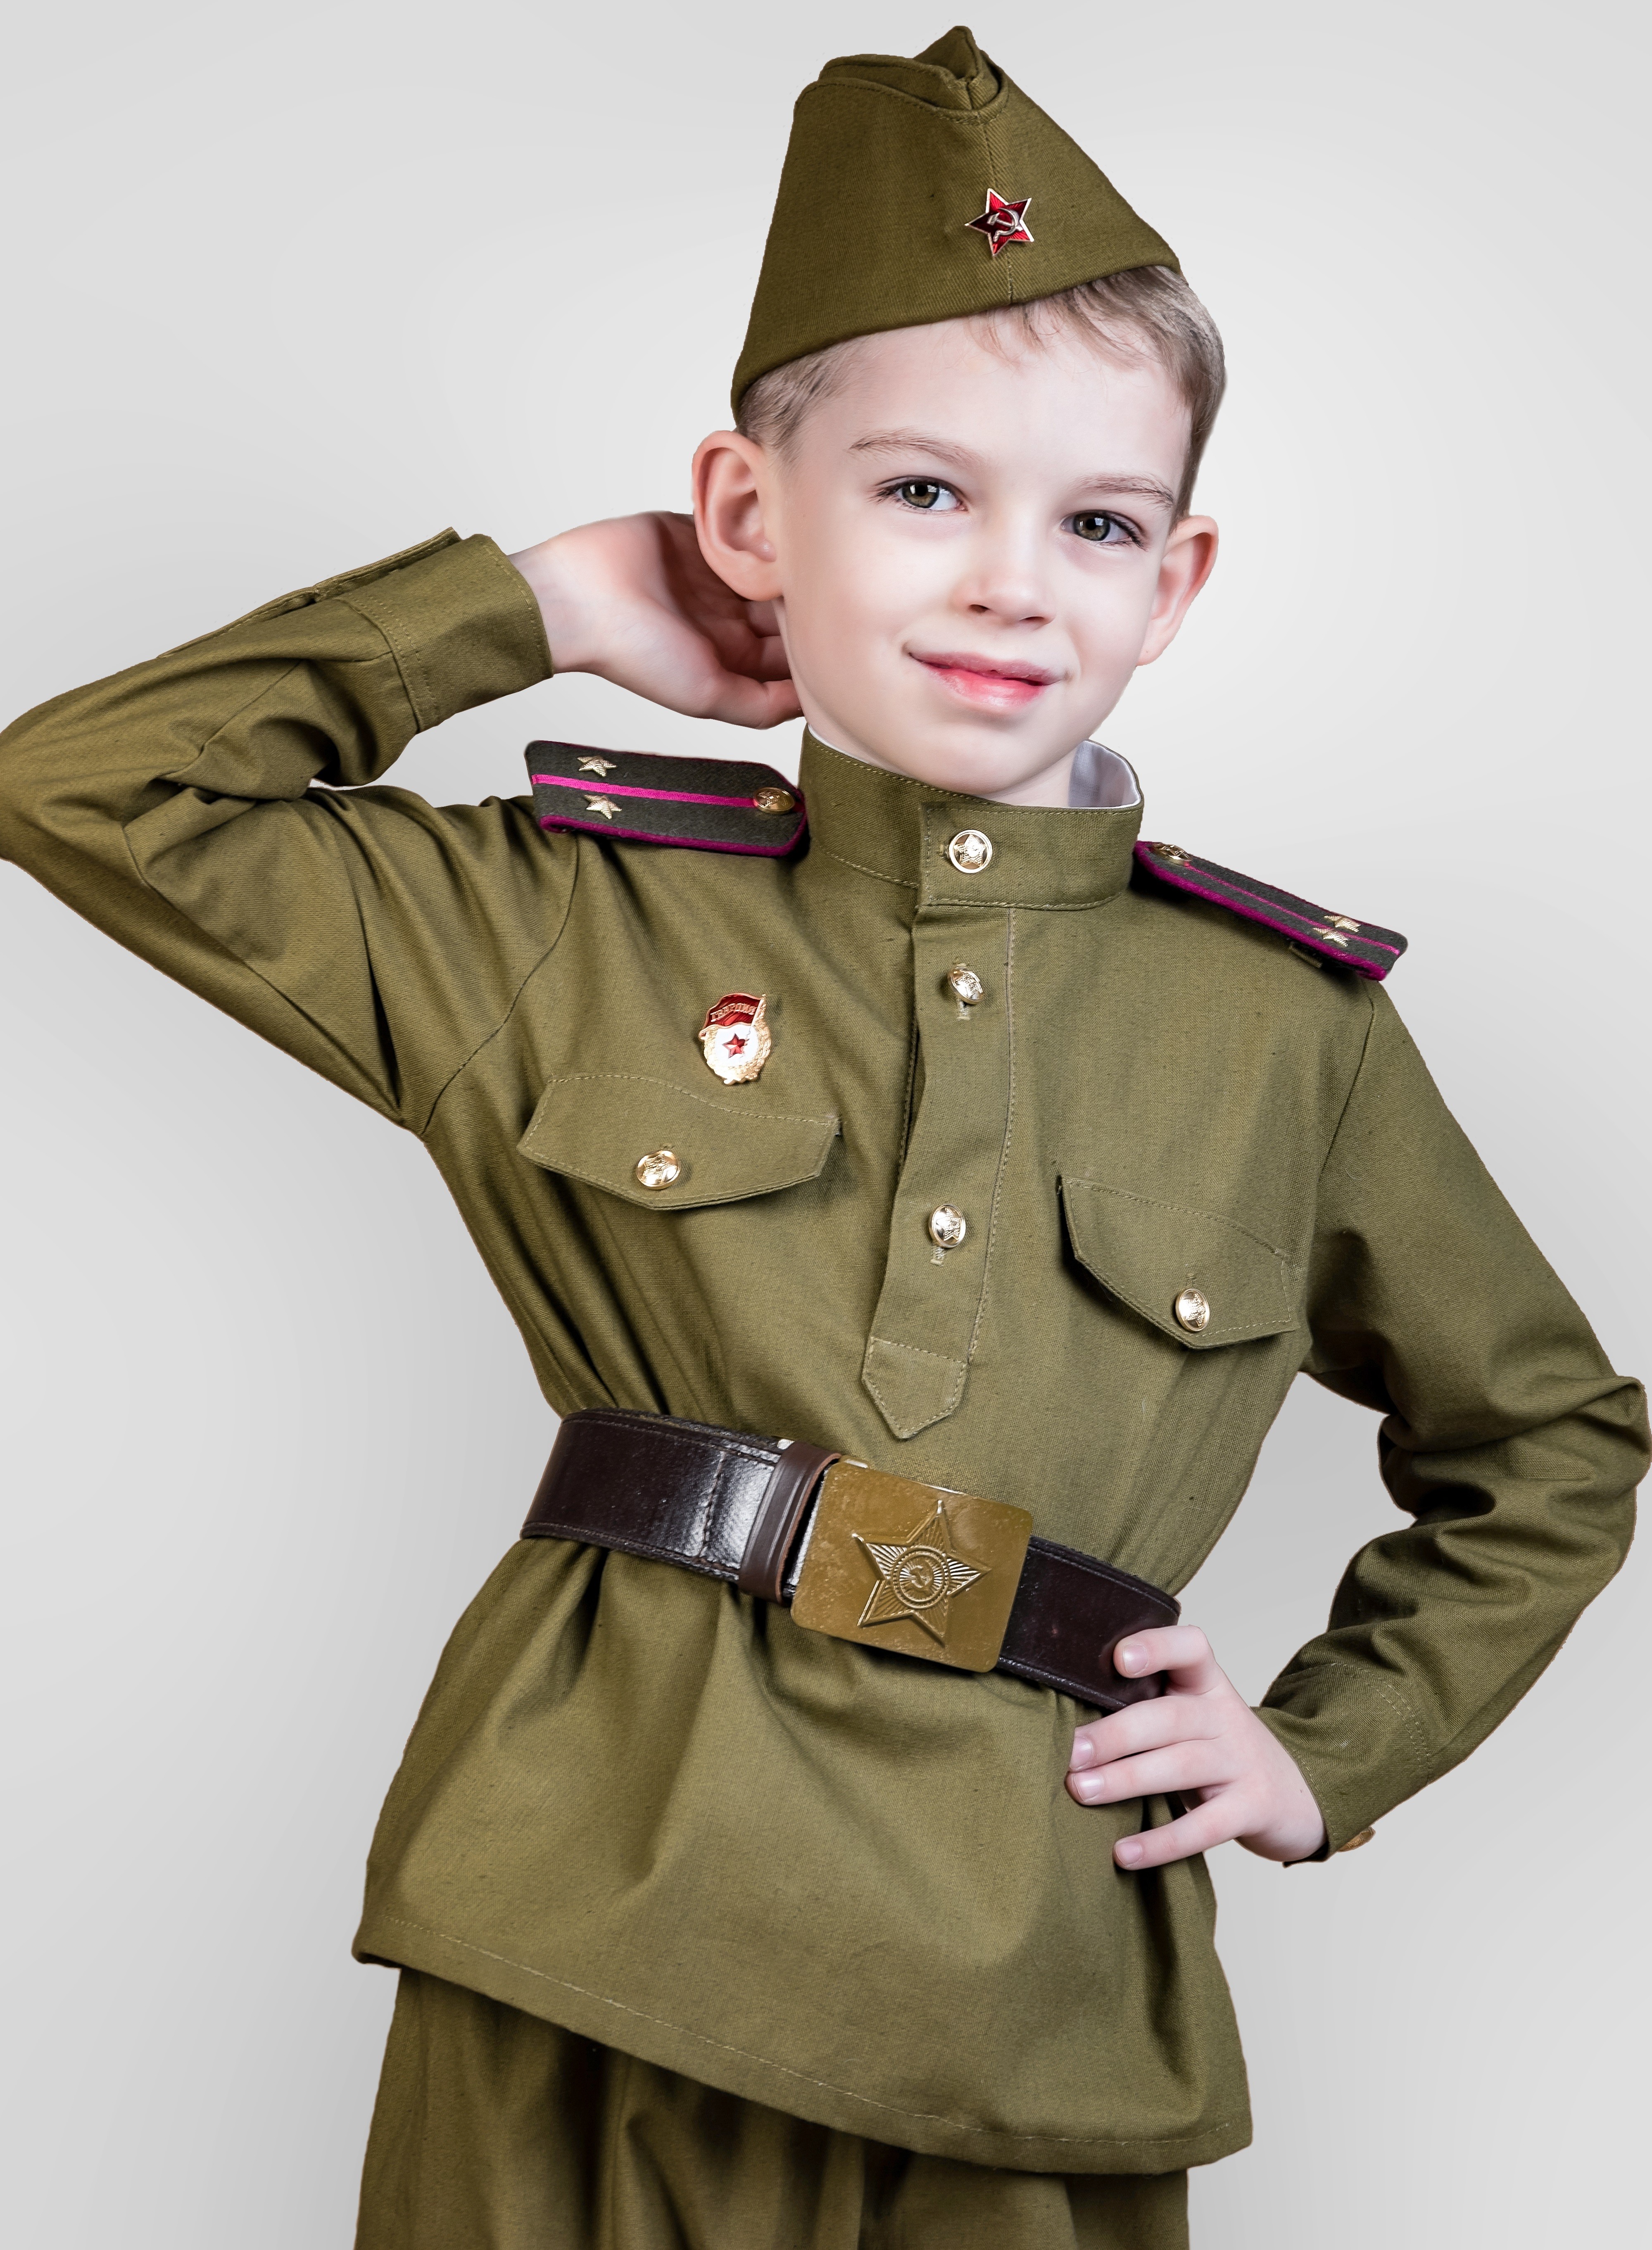 Военная форма для детей на 9. Дети в военной форме. Детская Военная форма. Солдатская форма для детей. Военнаяыорма для ребенка.